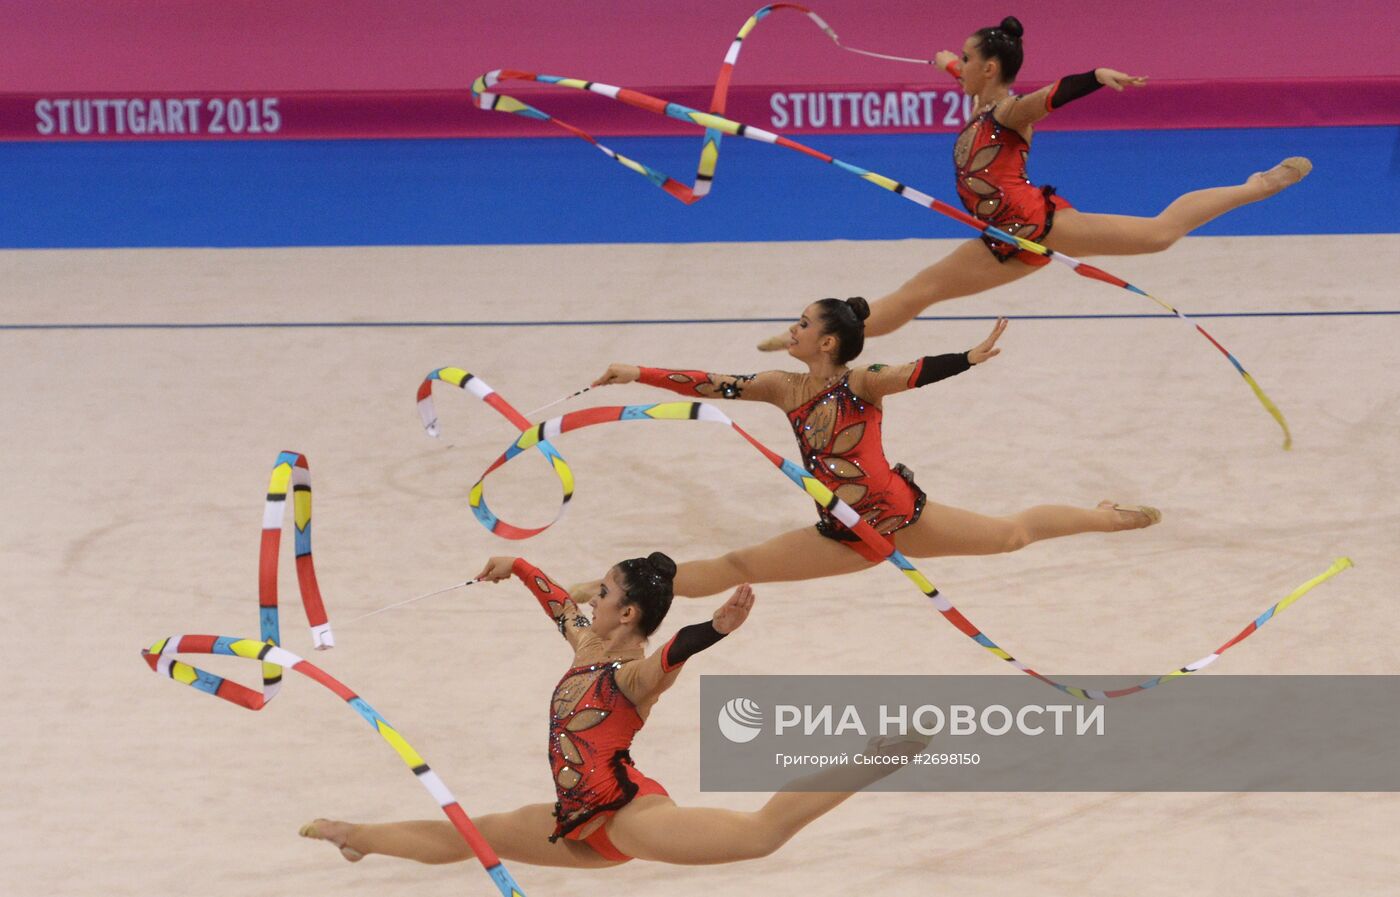 Художественная гимнастика. Чемпионат мира. Шестой день